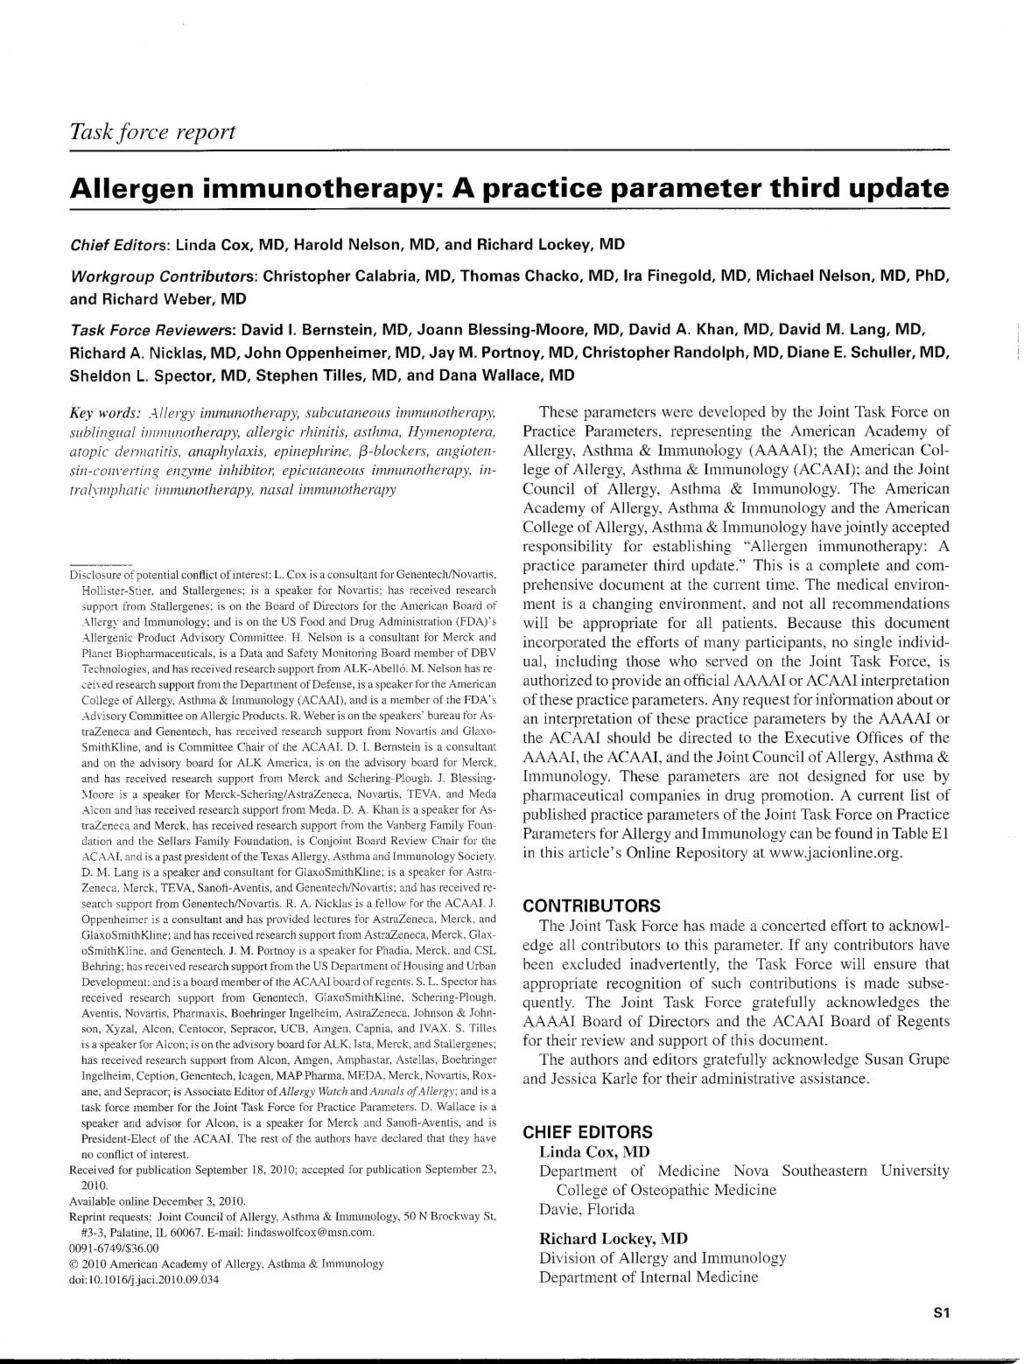 2011 2003: First Allergen Immunotherapy Practice Parameter